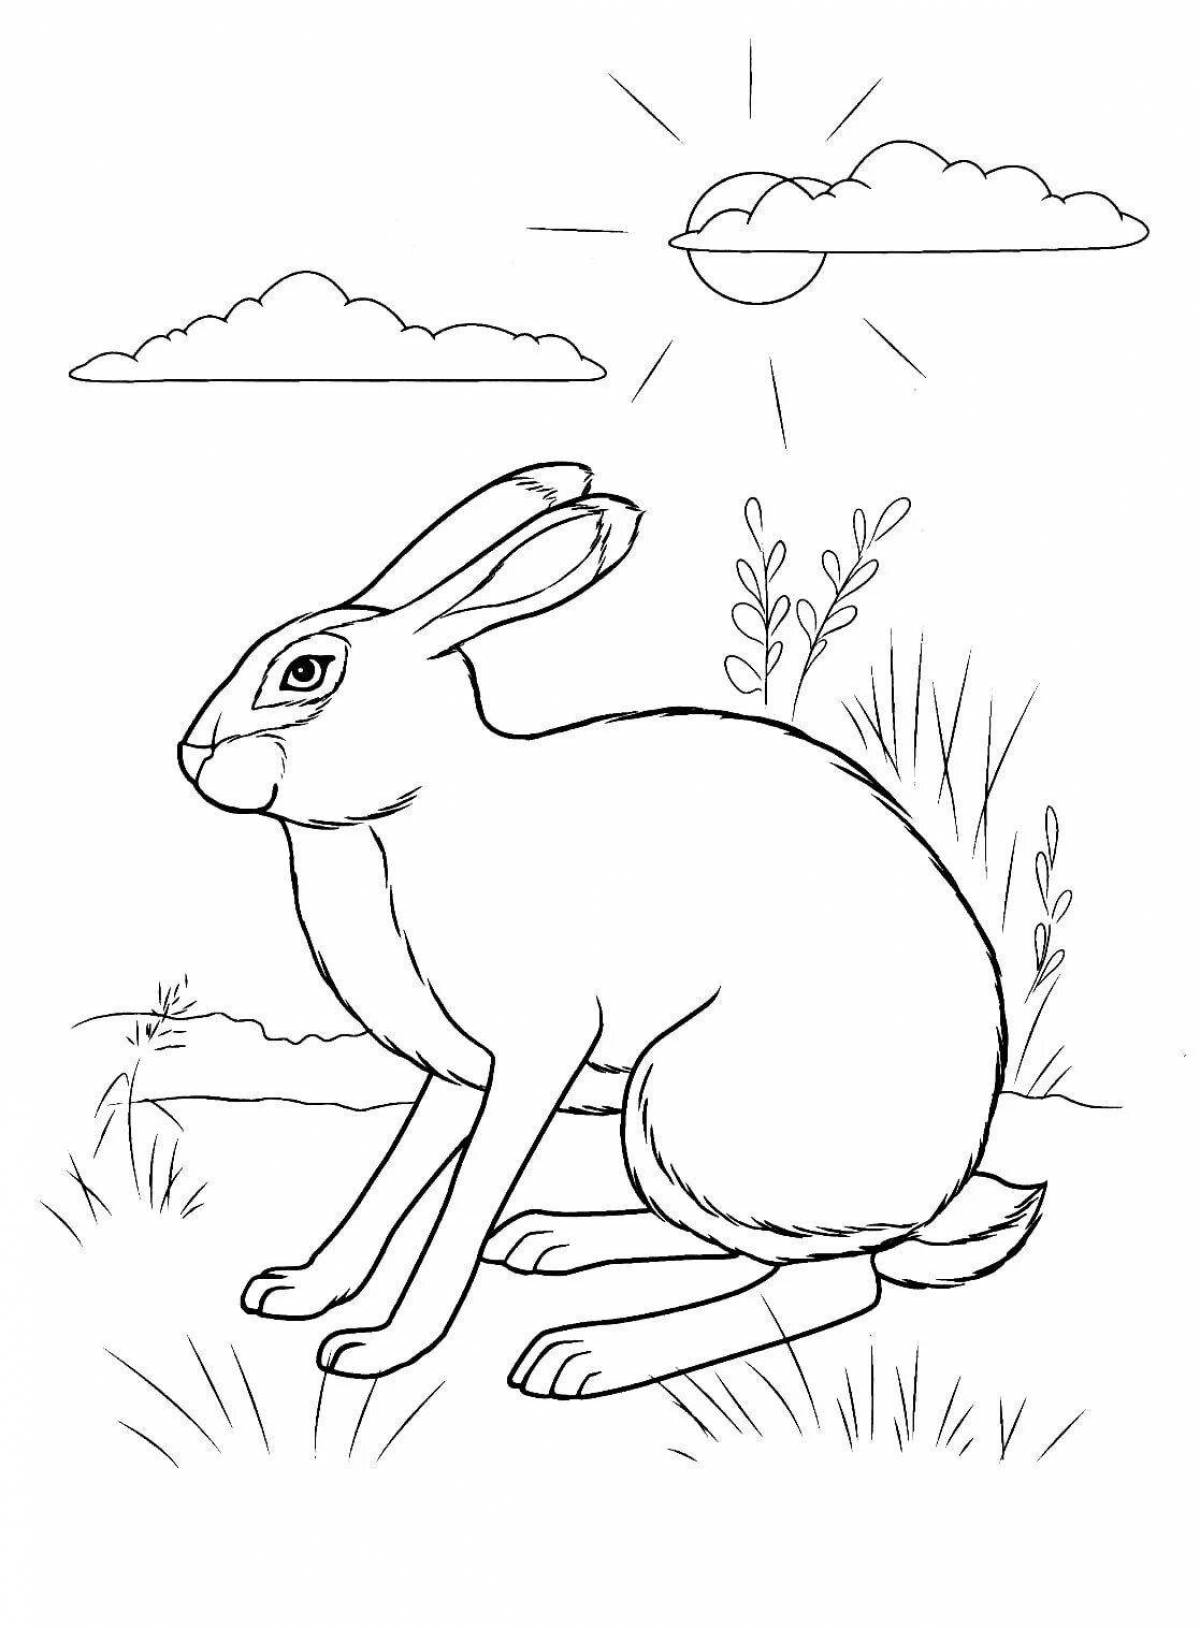 Привлекательный рисунок зайца